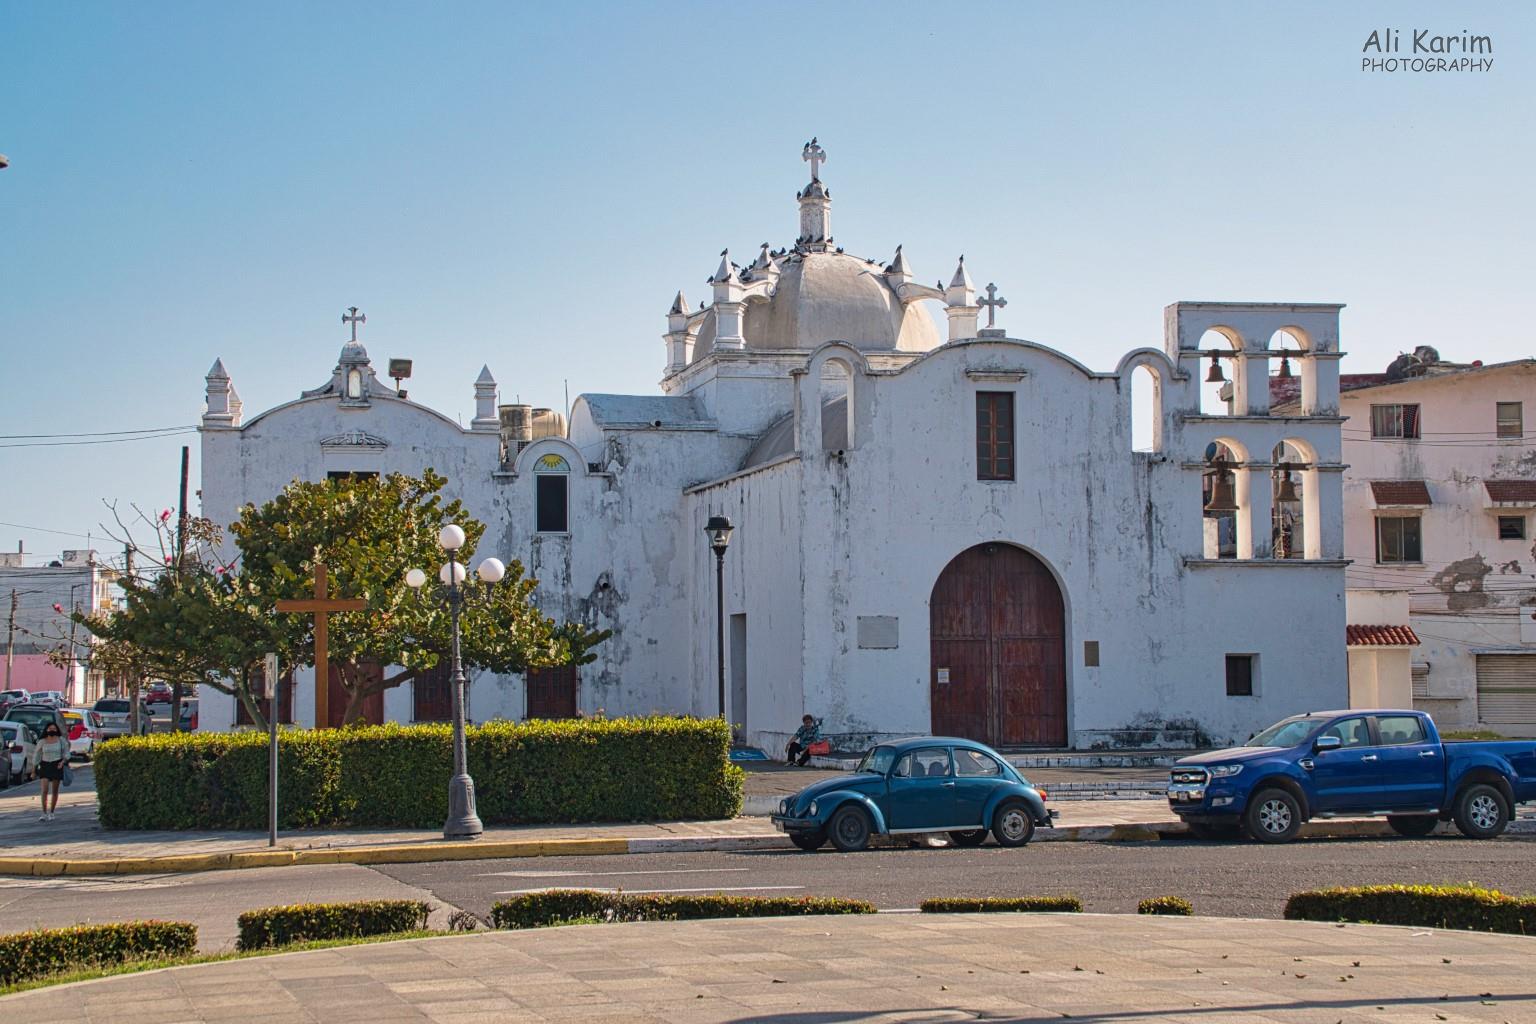 Veracruz, Mexico, December 2020, An ancient church in the town